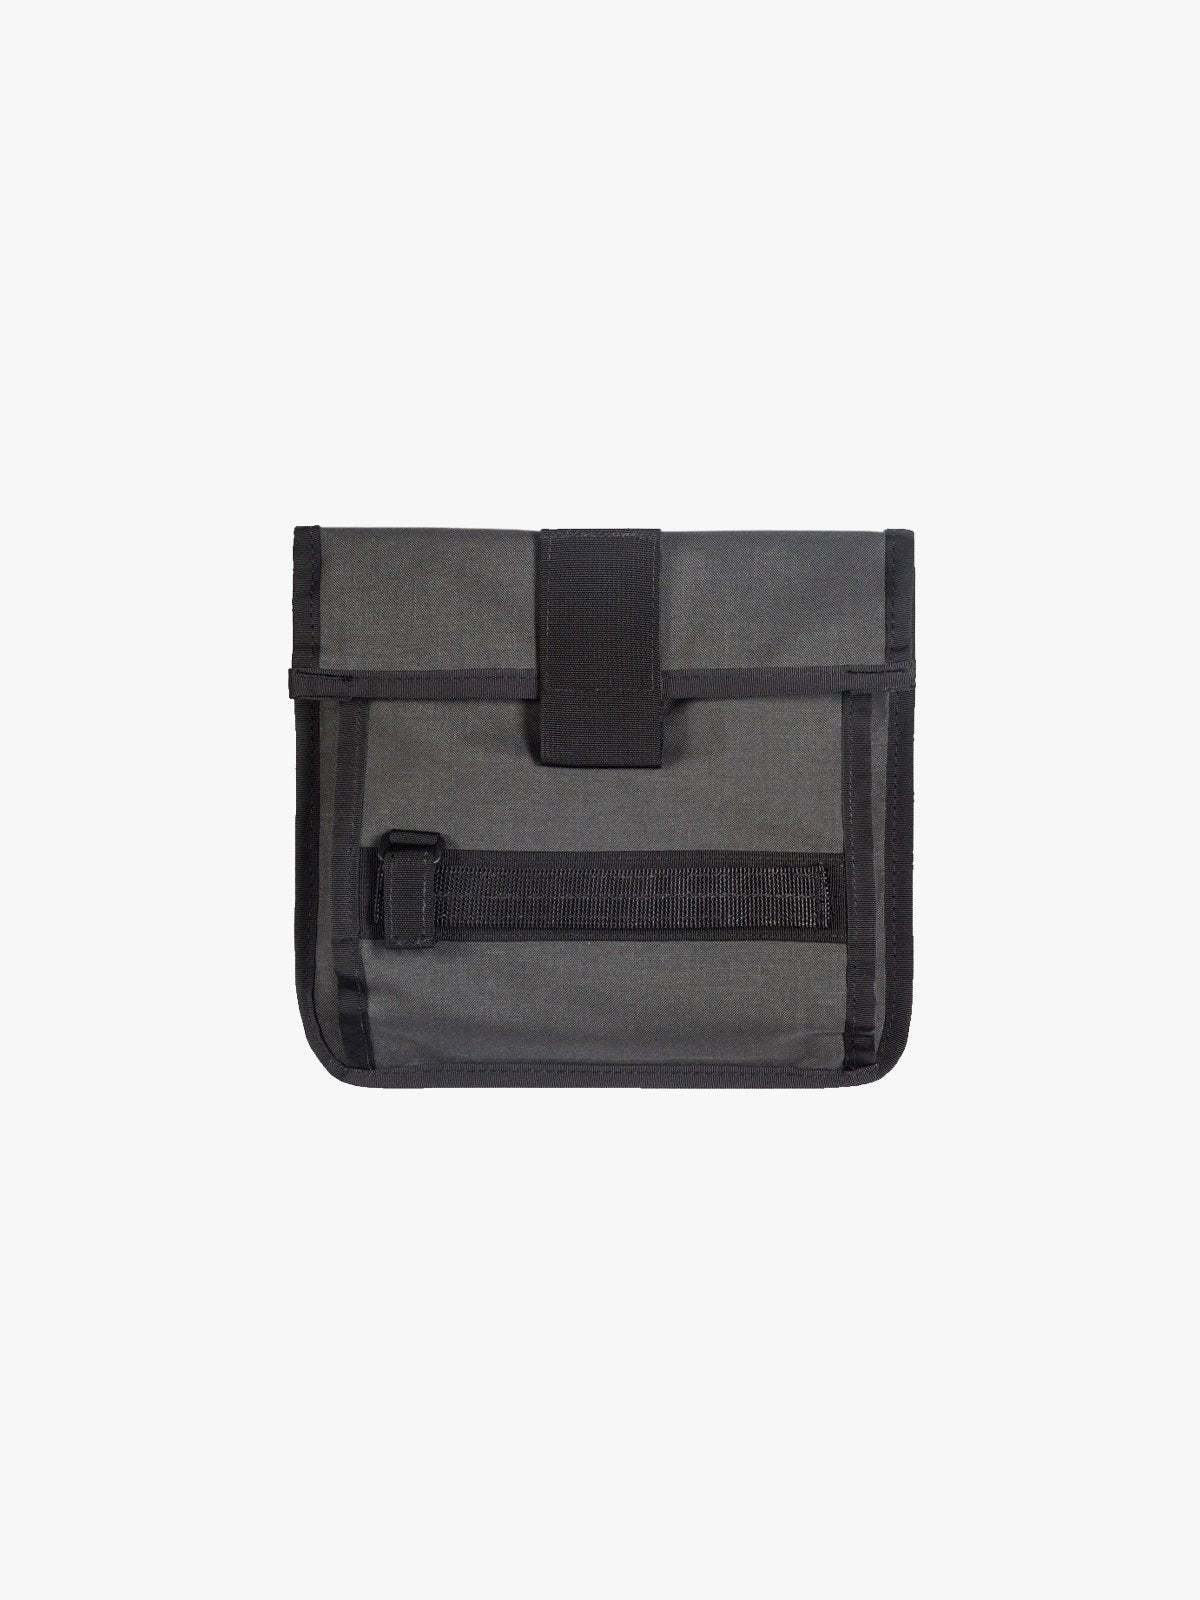 Arkiv Tool Pocket by Mission Workshop - Weatherproof Bags & Technical Apparel - San Francisco & Los Angeles - Construit pour durer - Garanti pour toujours